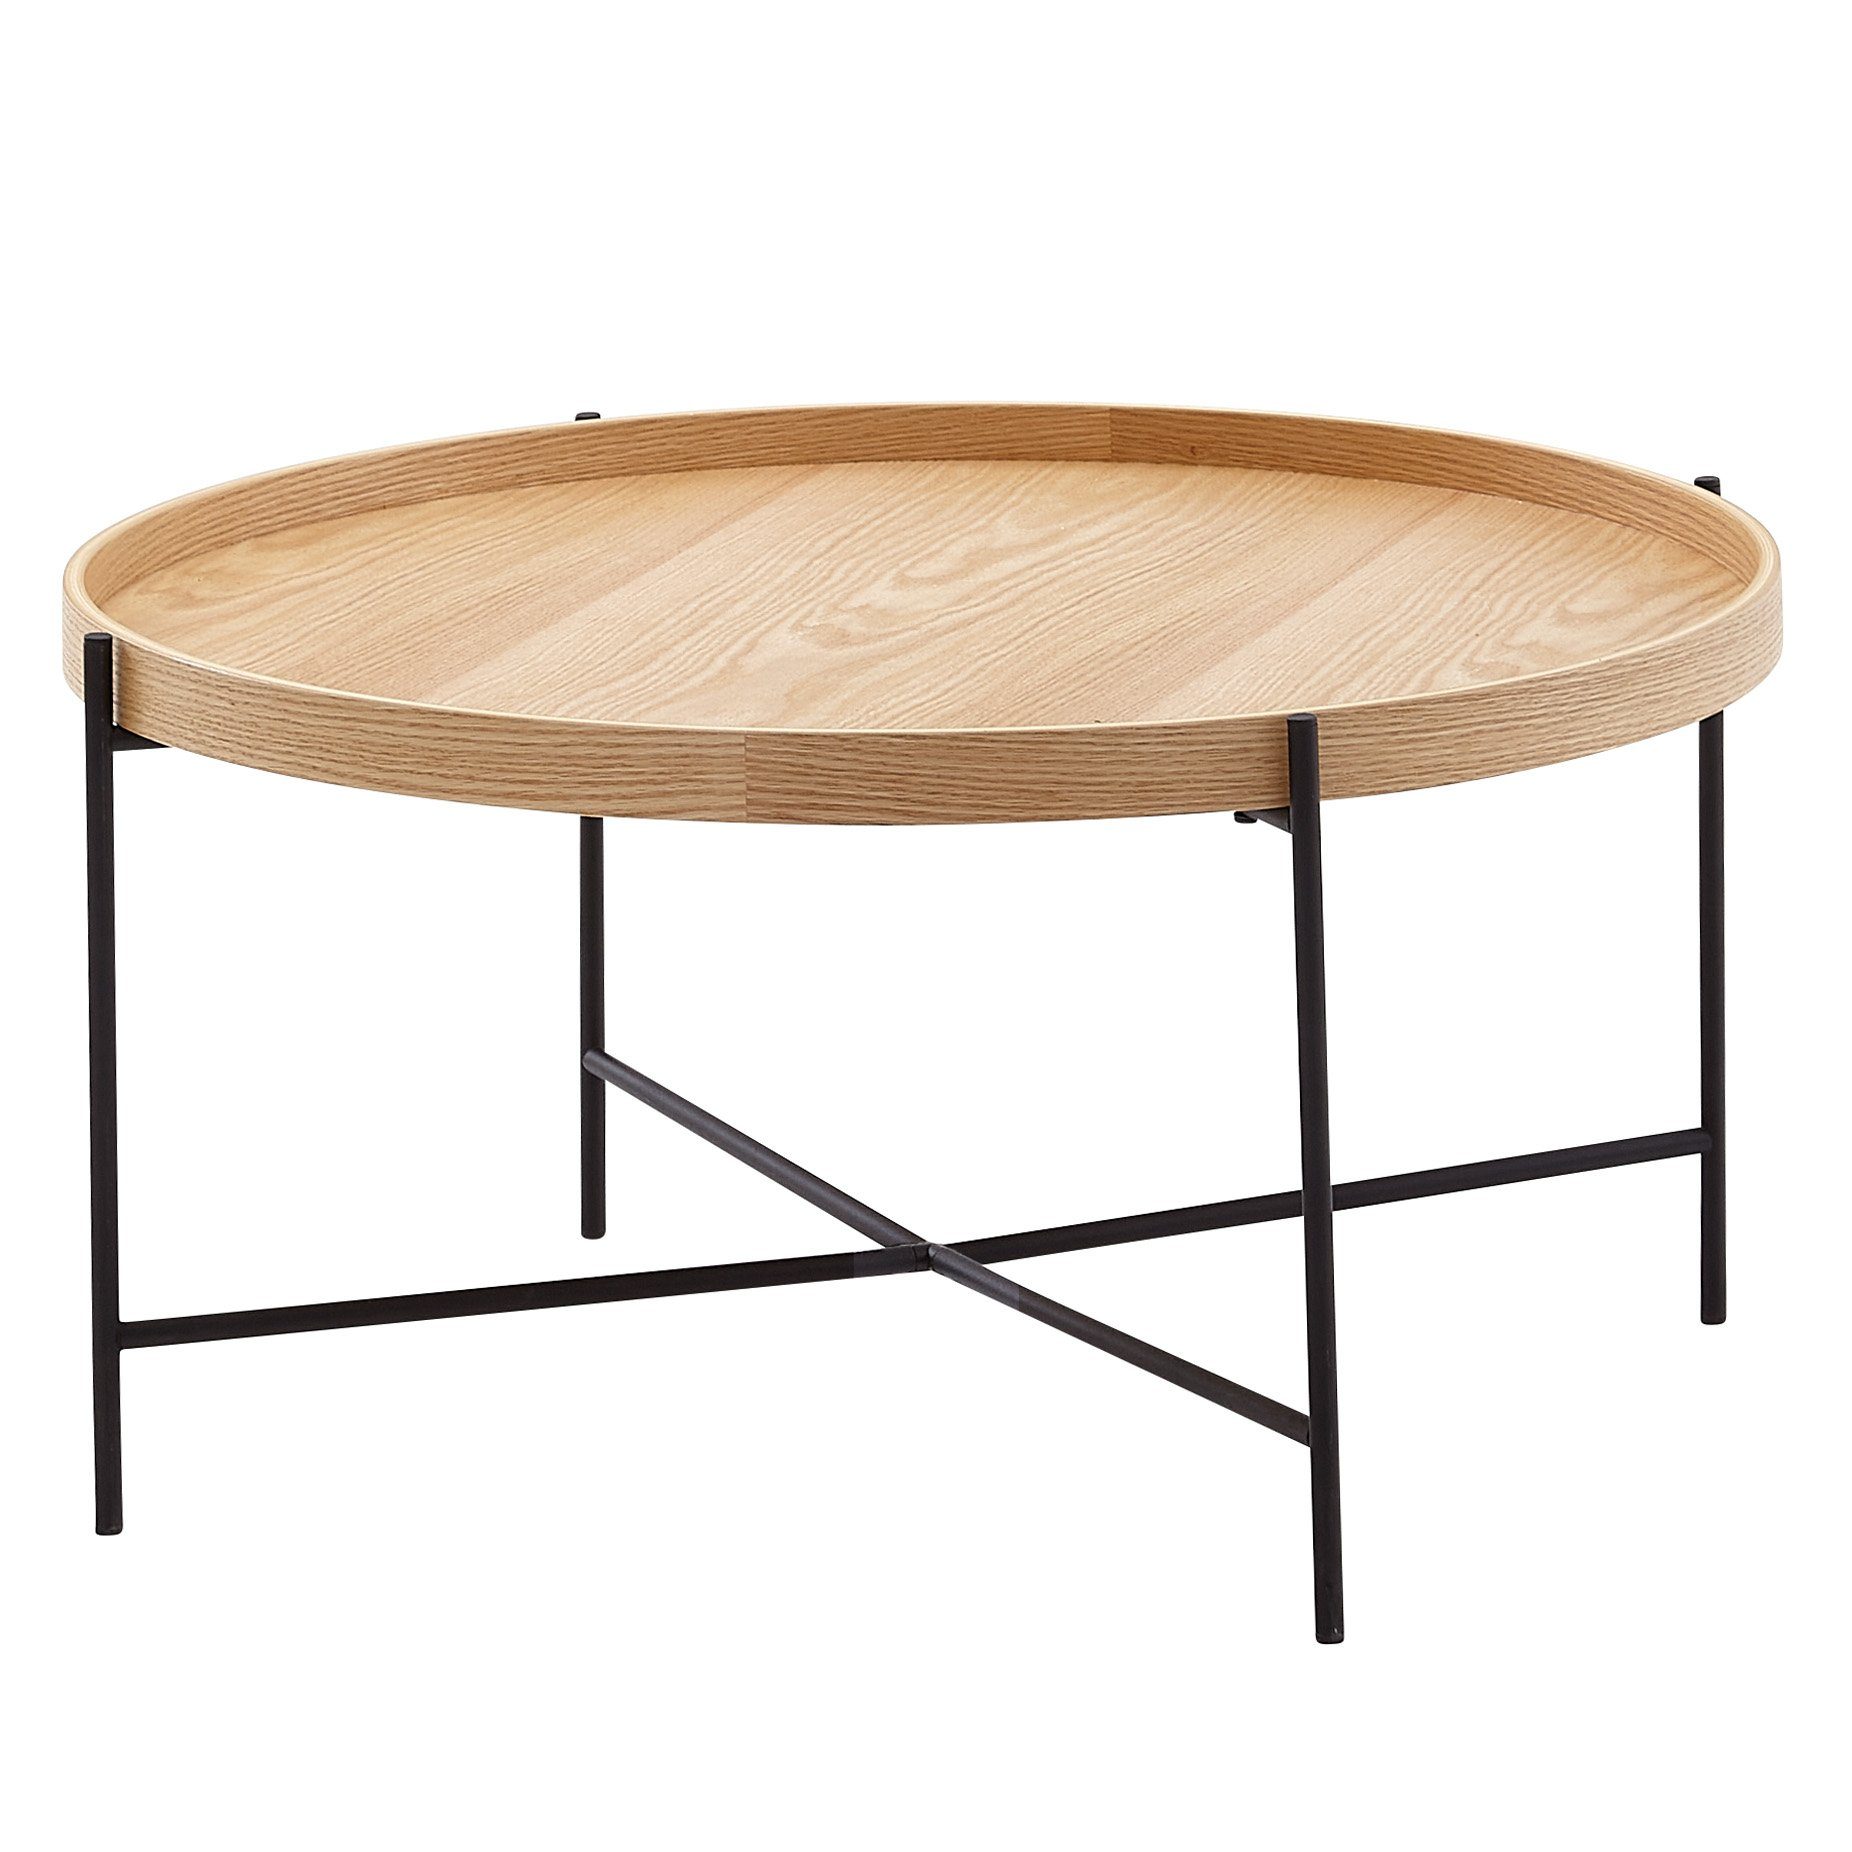 KADIMA DESIGN Couchtisch Moderne Holztisch – Eiche furniert, stabiles Metallgestell